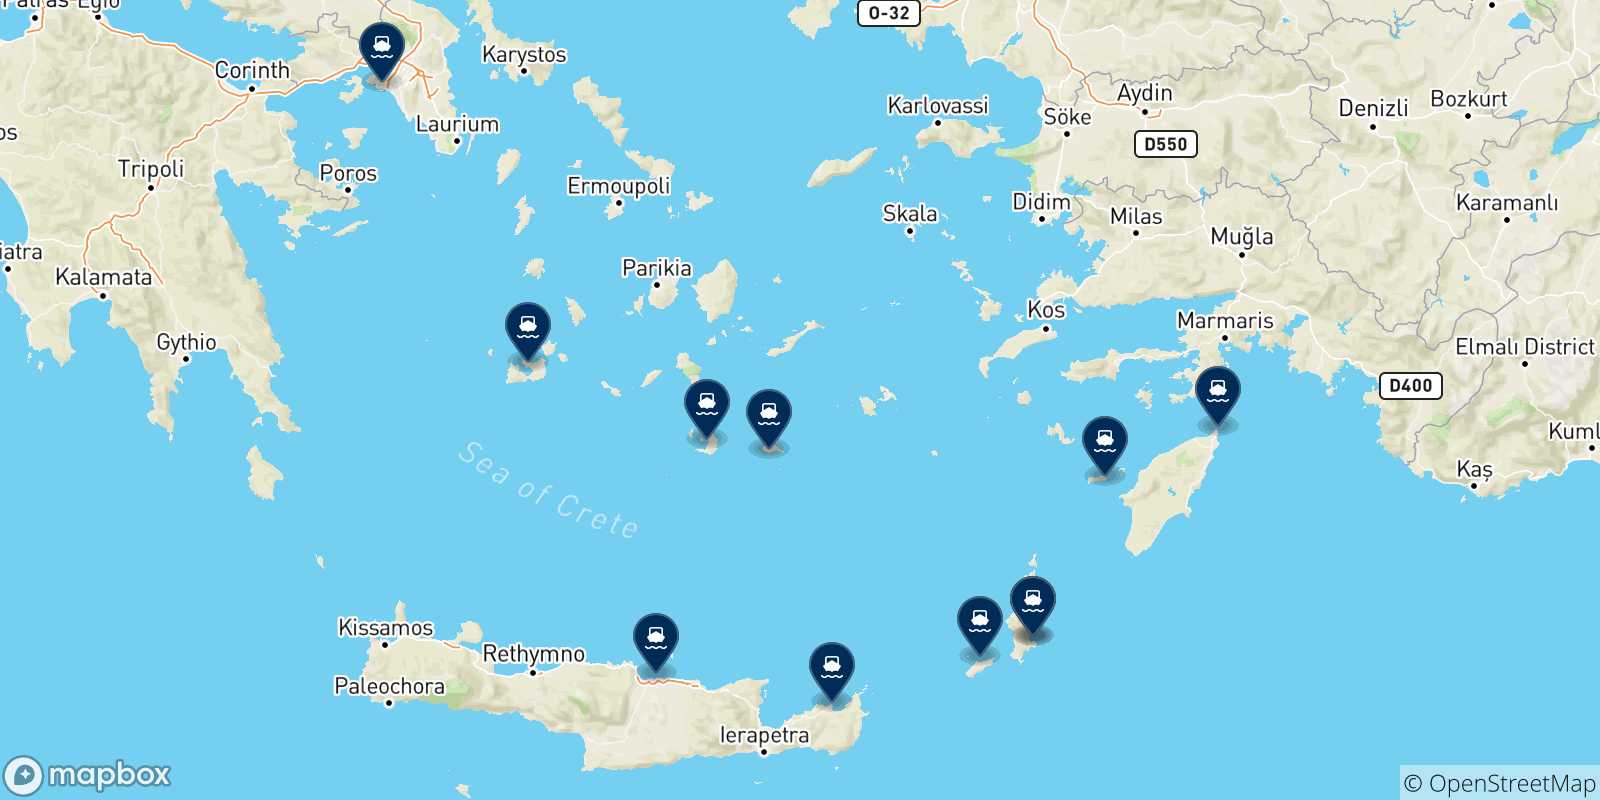 Mappa delle possibili rotte tra Diafani (Karpathos) e la Grecia